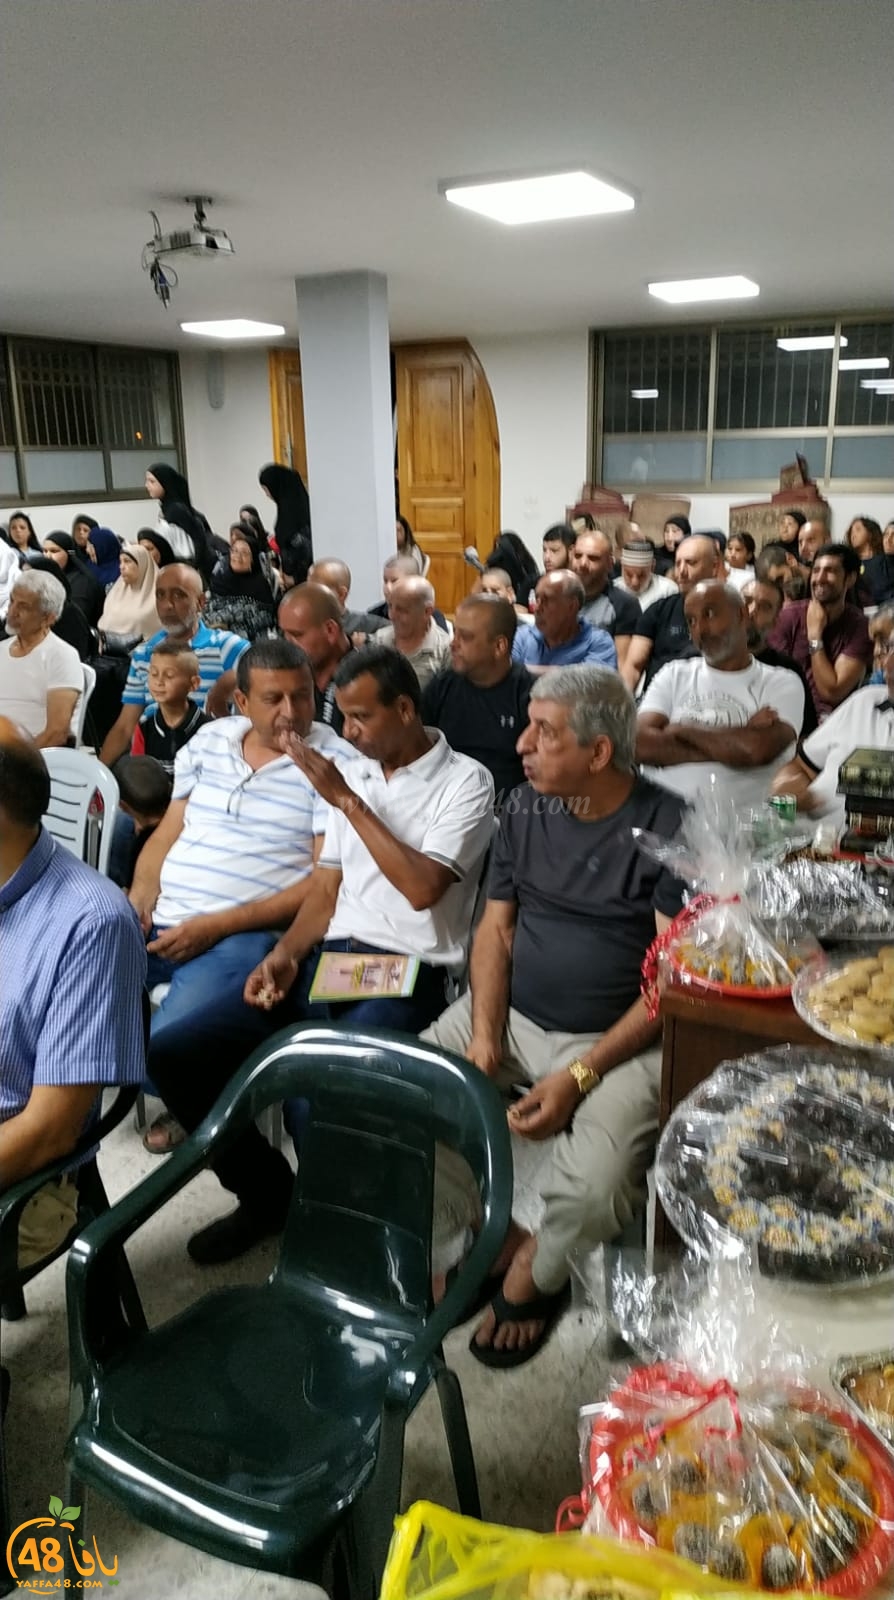  بالصور: لجنة الحج والعمرة بيافا تُنظم احتفالاً لتوديع حجاج بيت الله الحرام